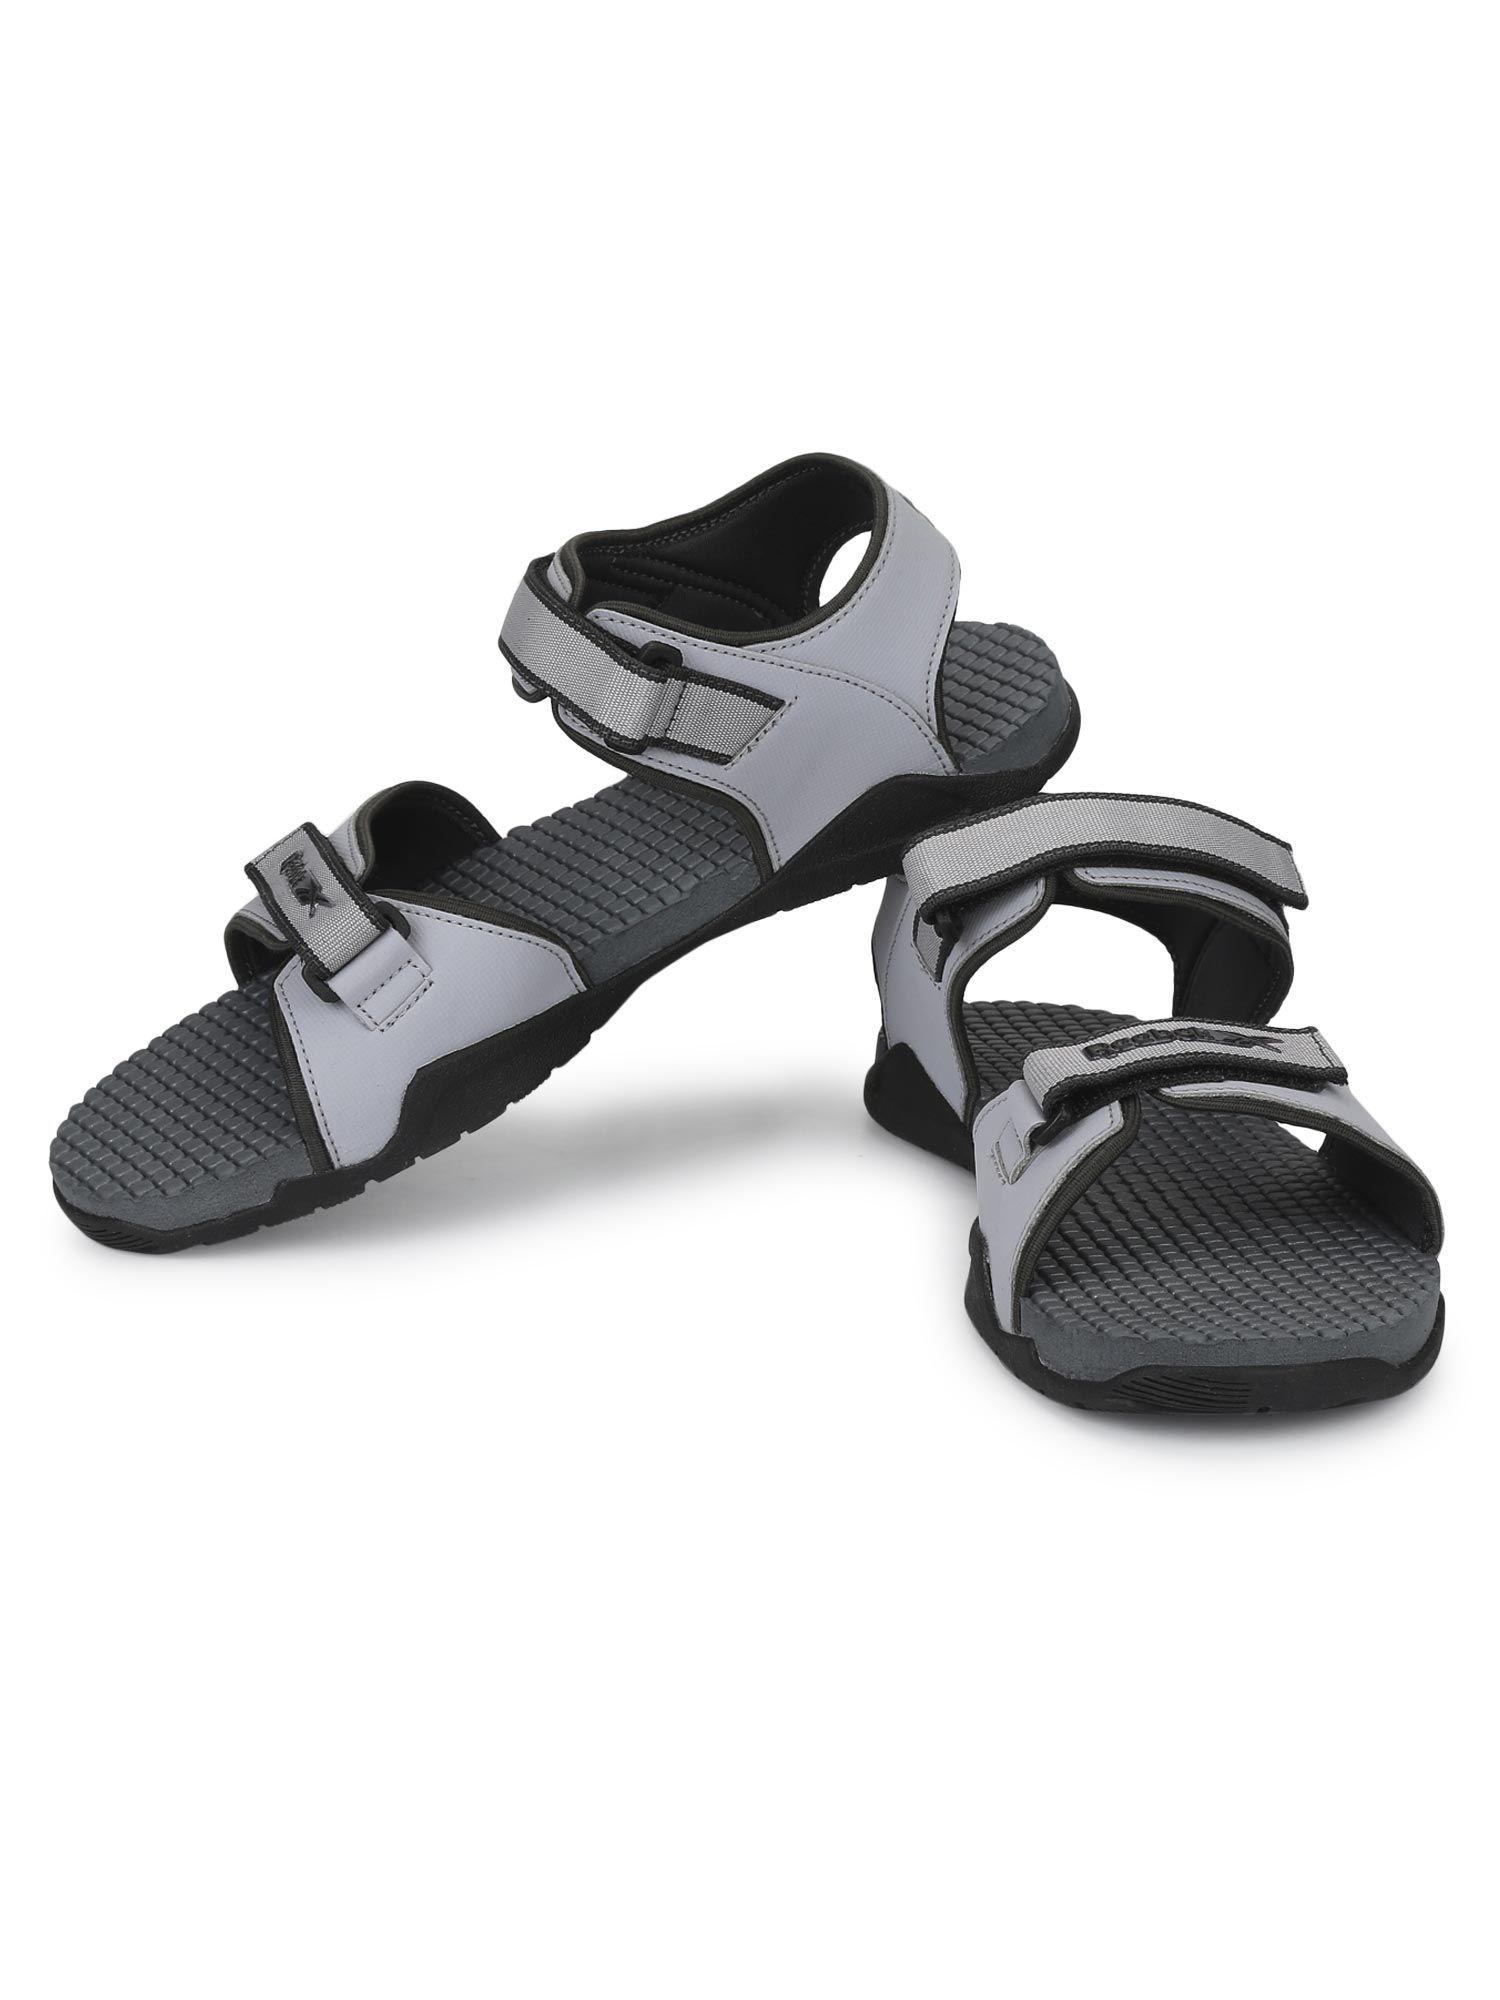 flex connect grey sandals